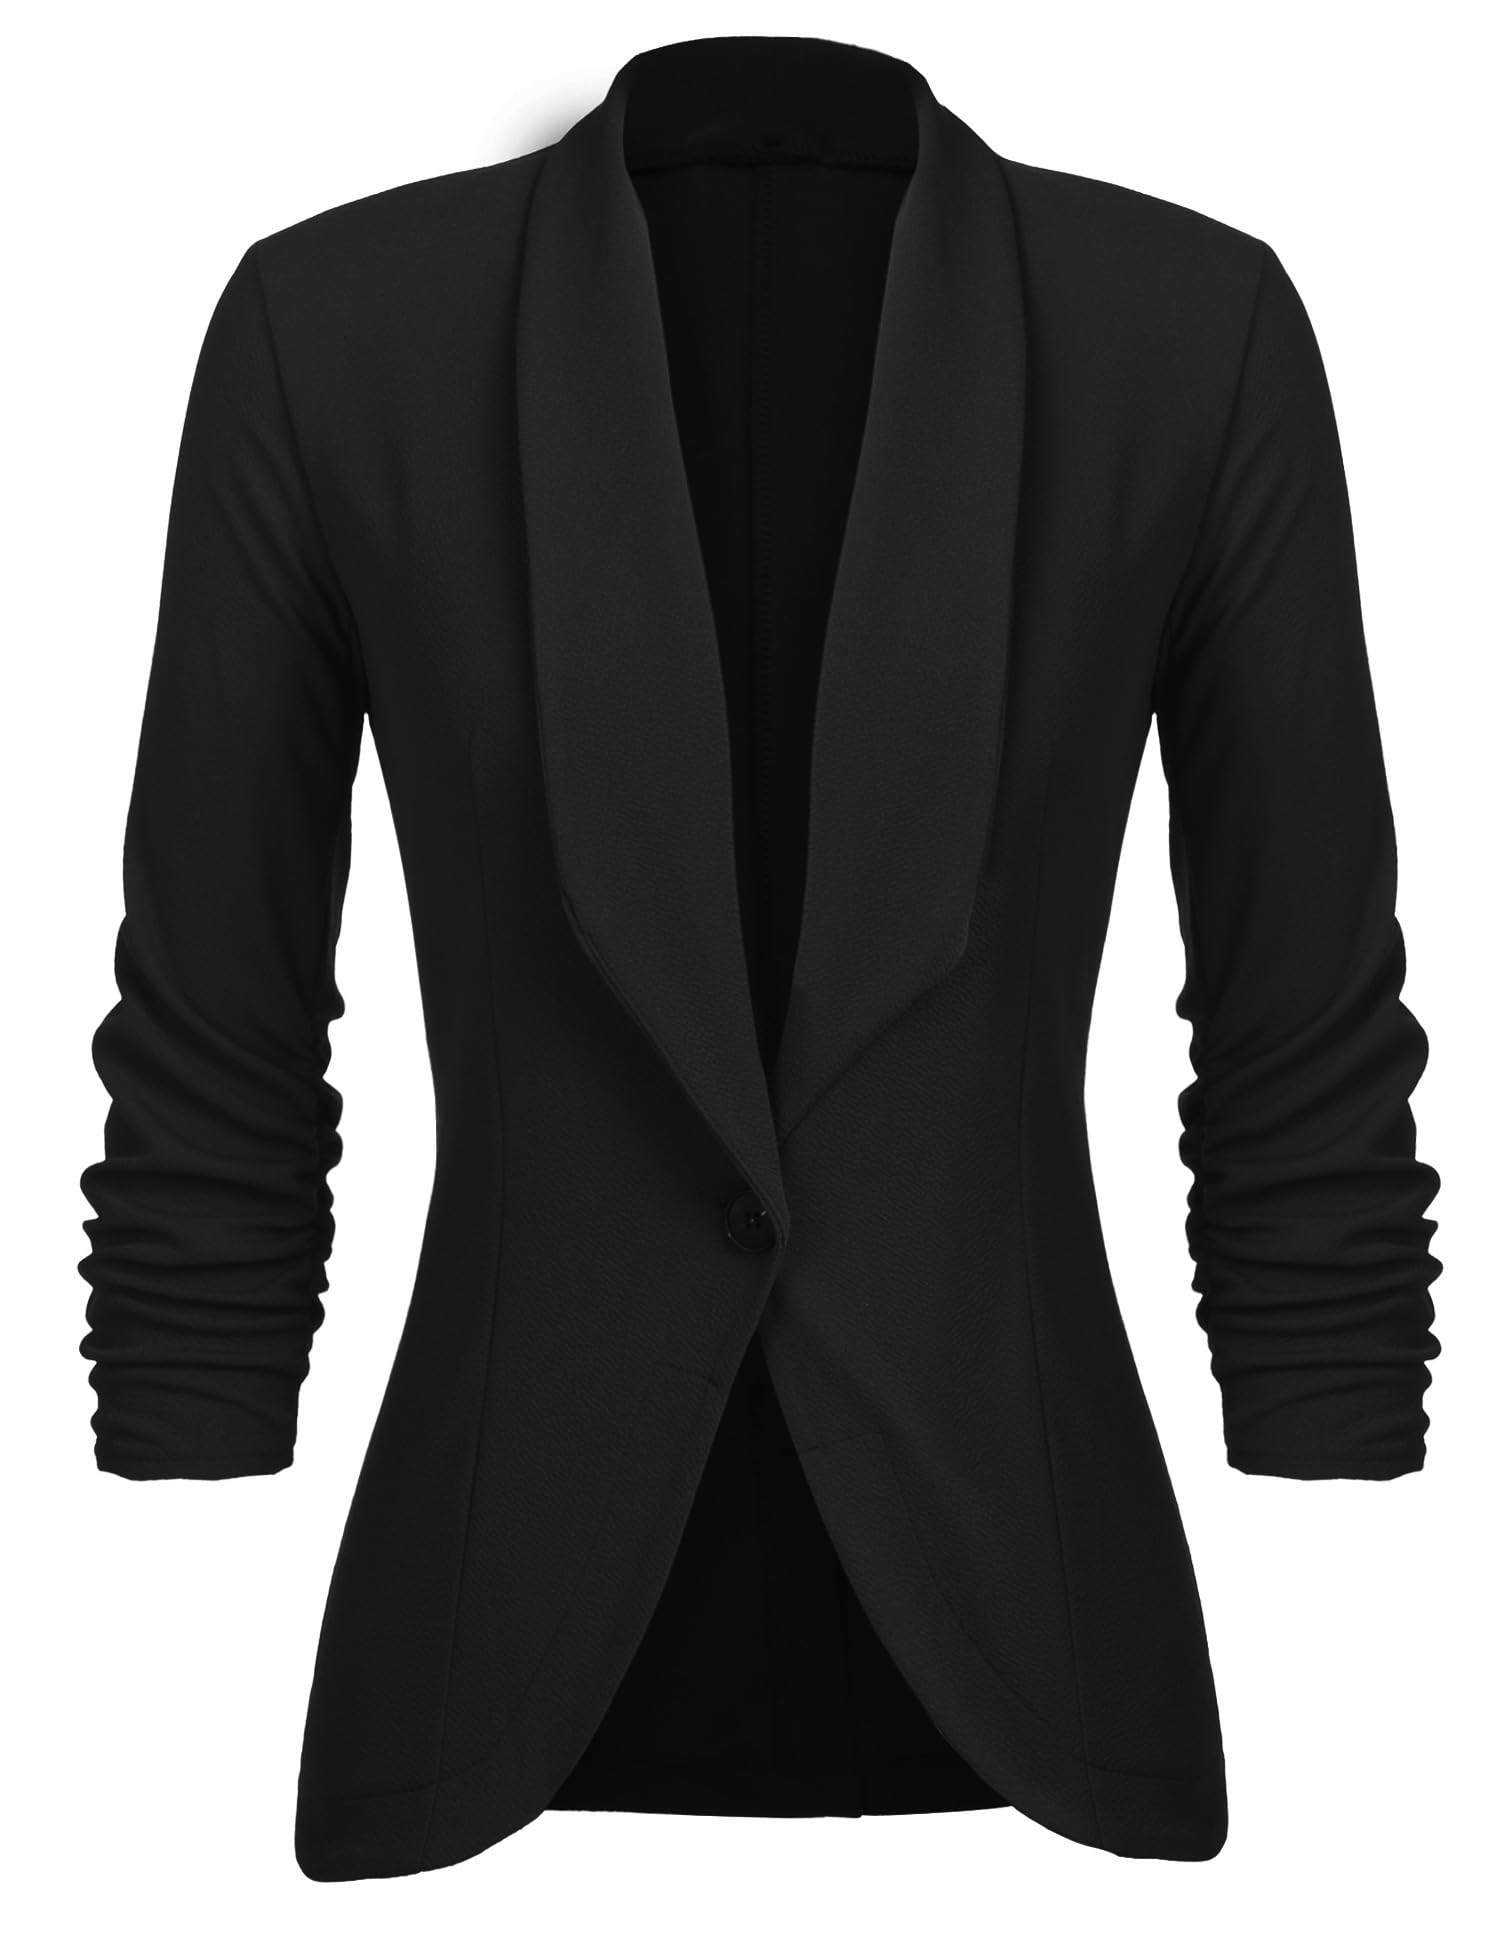 Unibelle Damen Blazer Cardigan Dünn 3/4 Längere Elegant Leicht Bolero Jacke Blazer Slim Fit Anzug Trenchcoat , A-schwarz, 44(Herstellergröße:XXL)